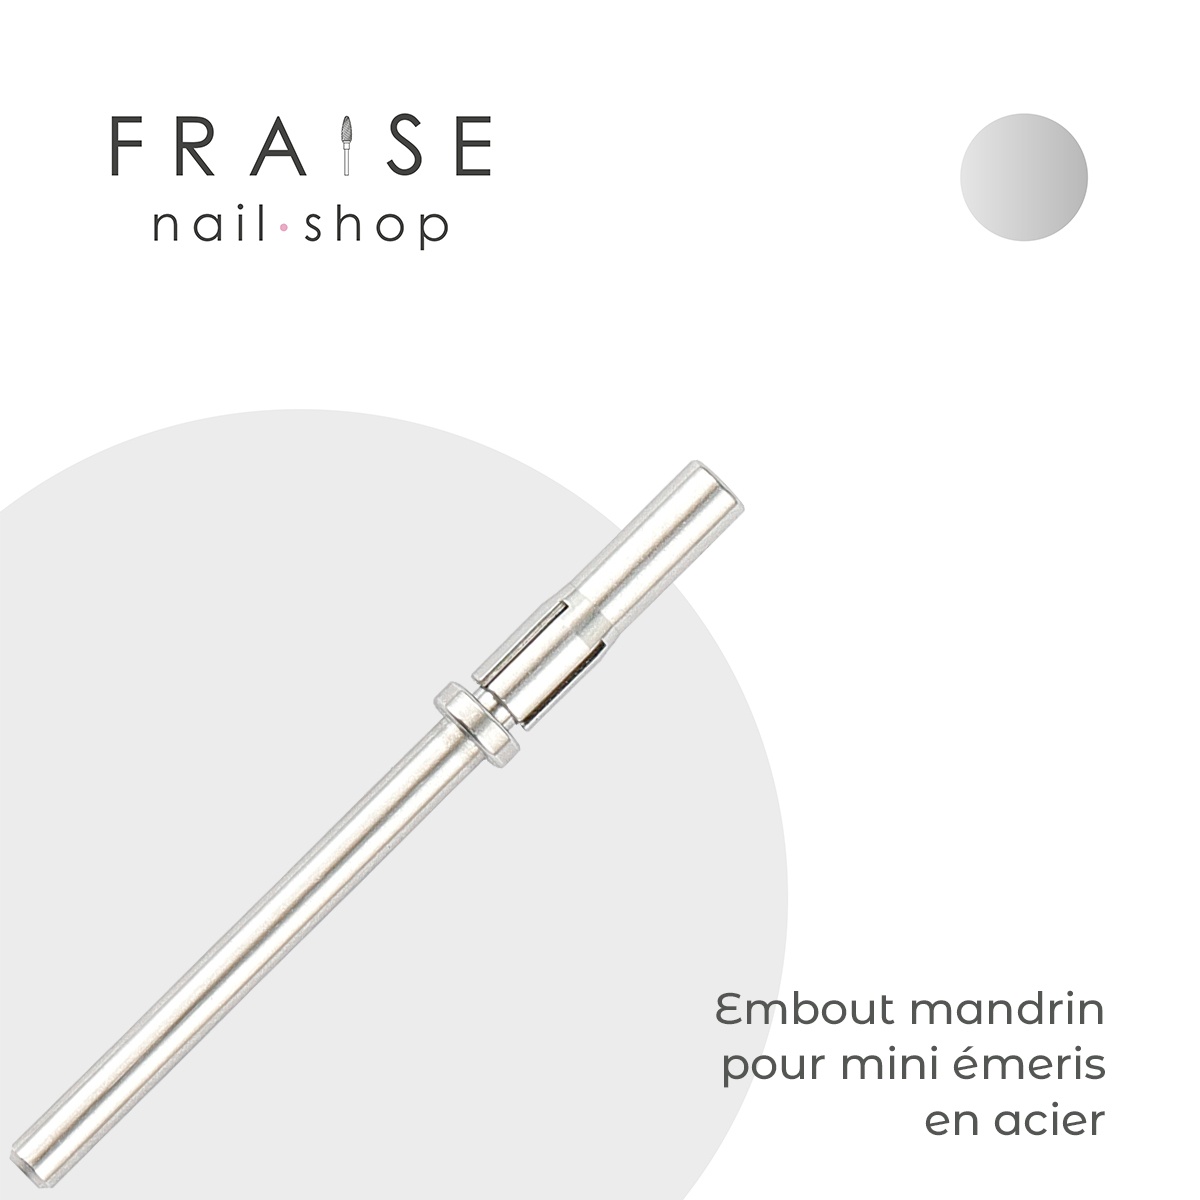 Embout Mandrin pour Mini Emeris - Fraise Nail Shop